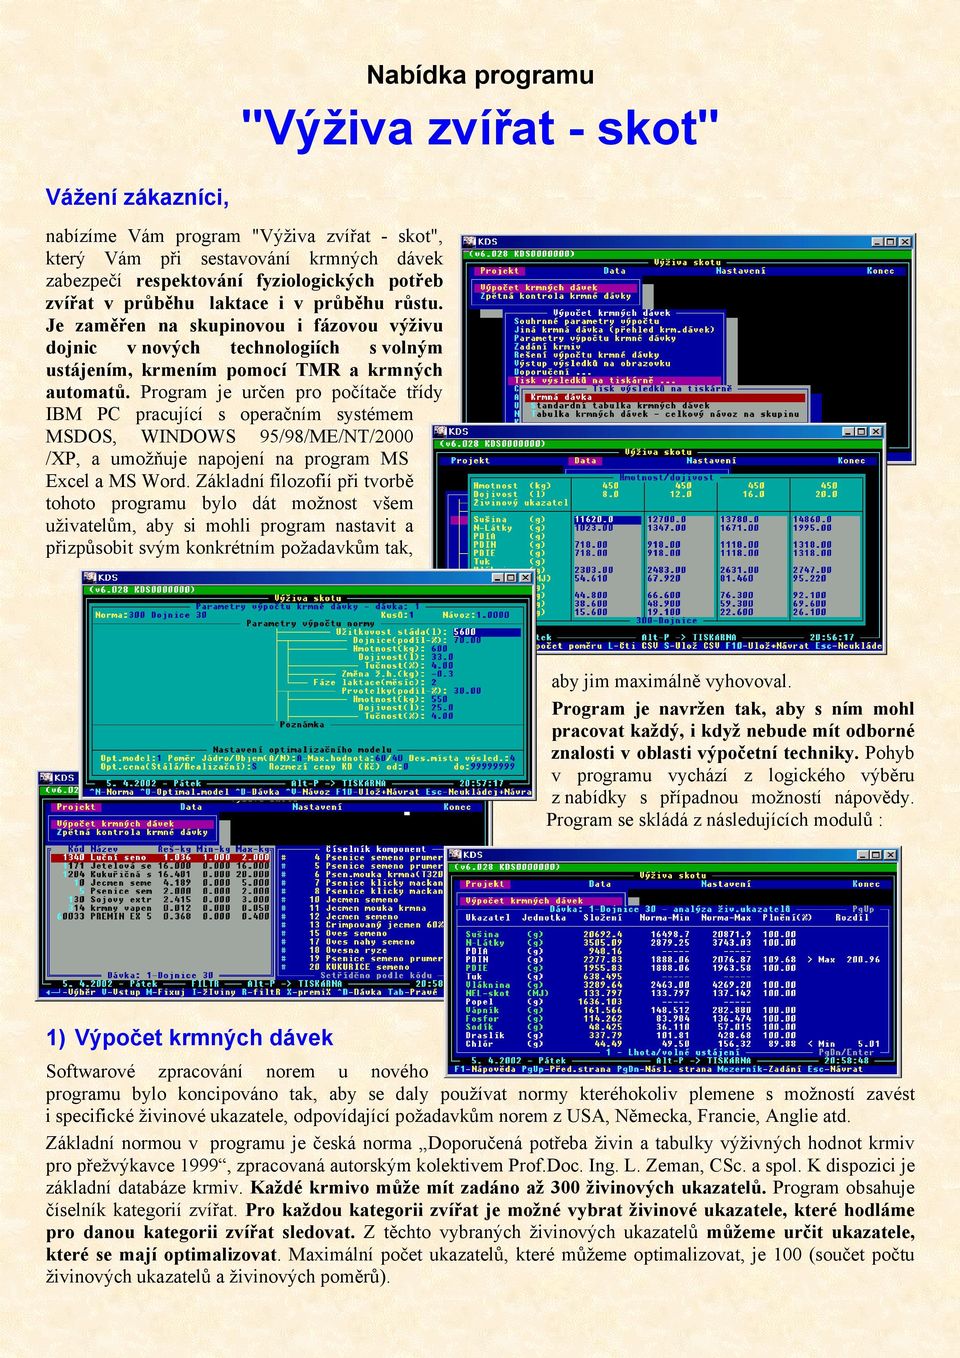 Program je určen pro počítače třídy IBM PC pracující s operačním systémem MSDOS, WINDOWS 95/98/ME/NT/2000 /XP, a umožňuje napojení na program MS Excel a MS Word.